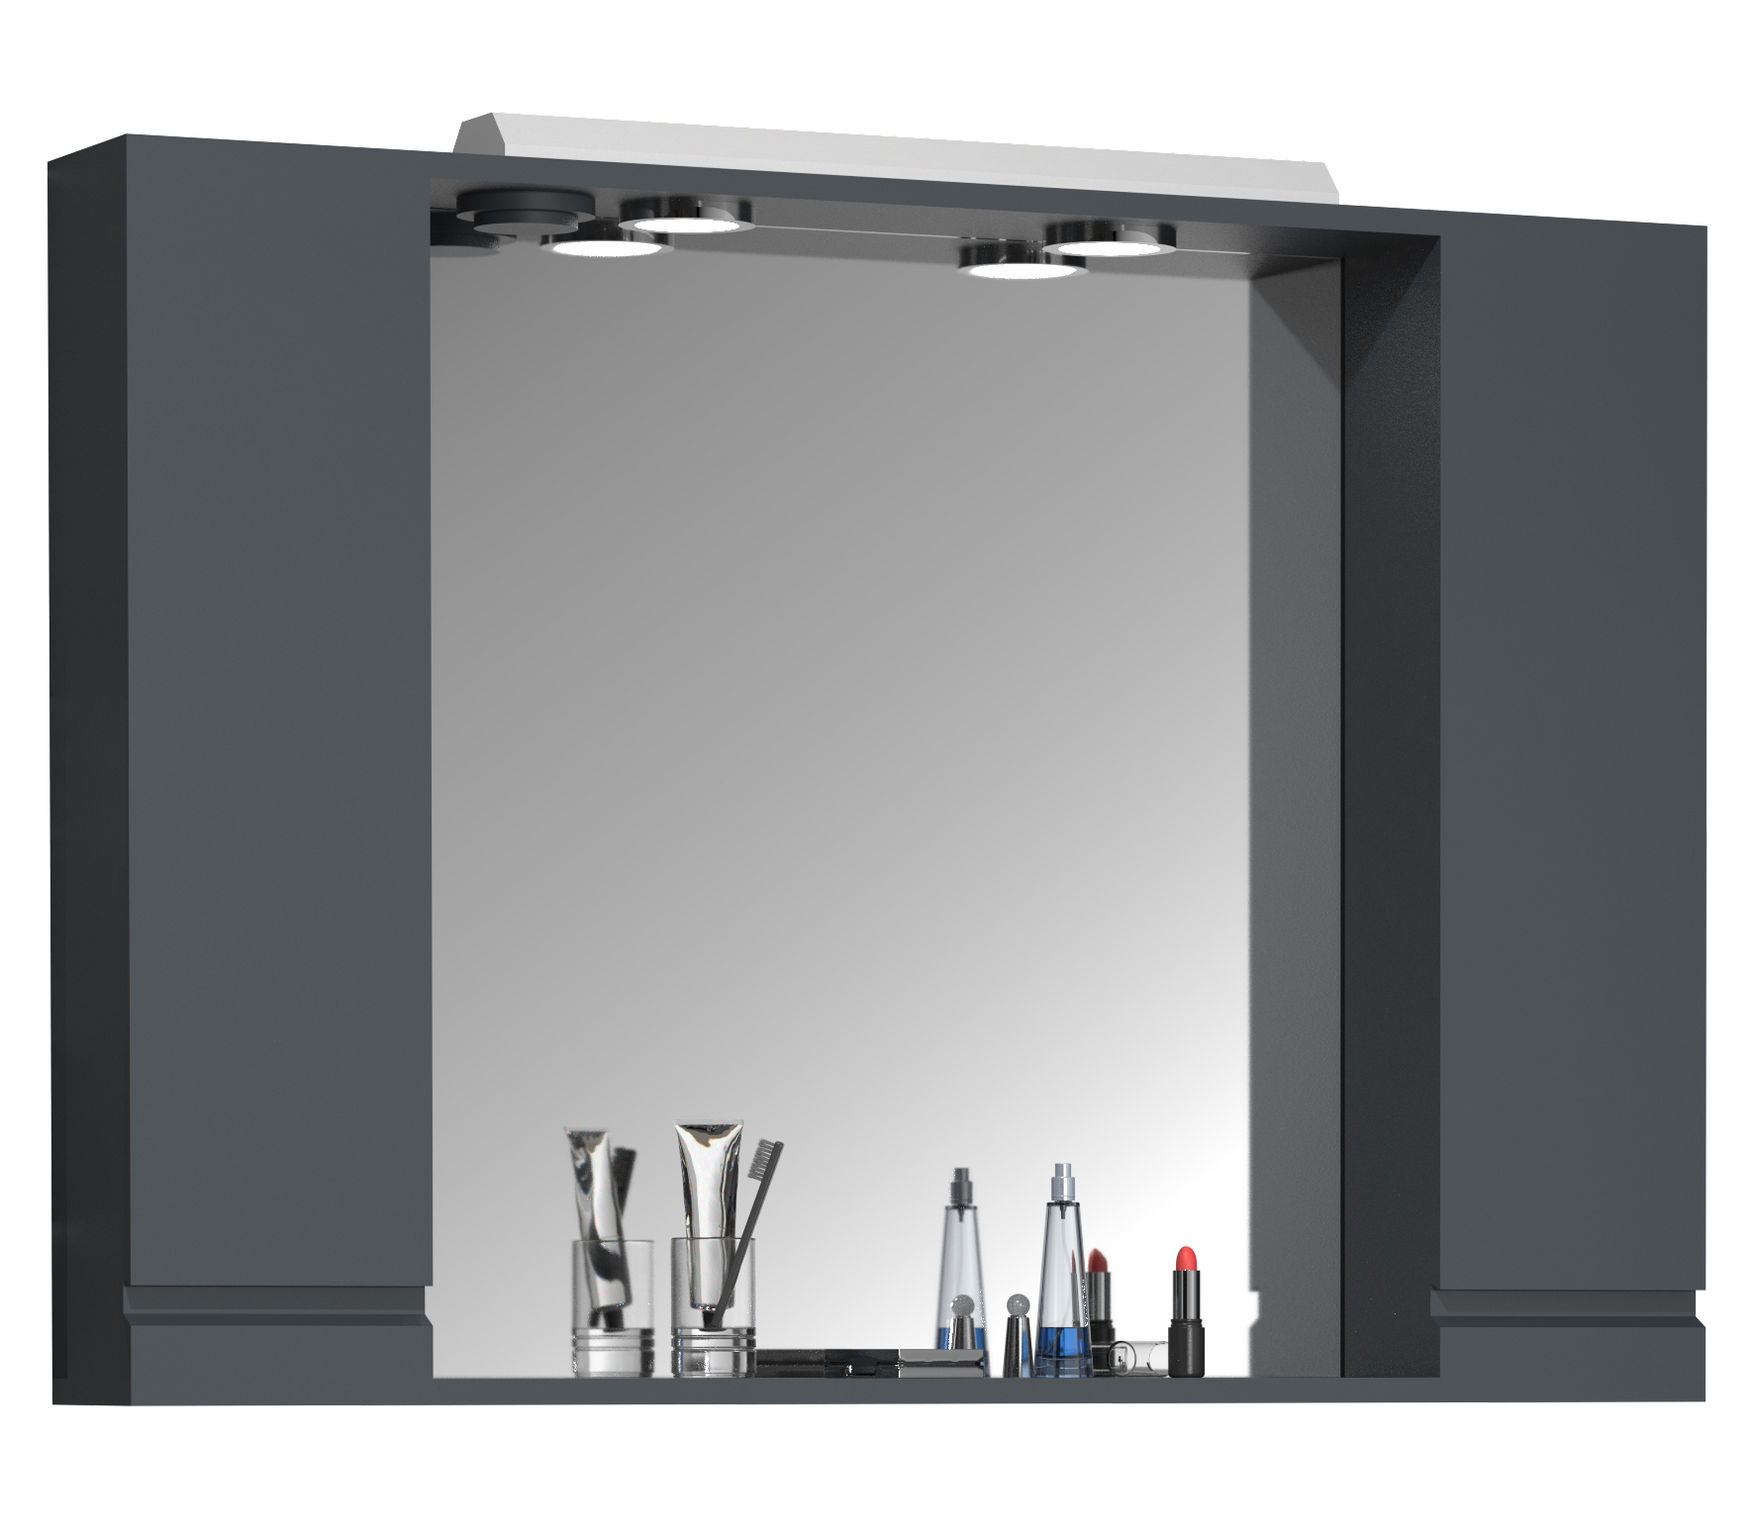 VCM Badspiegel Wandspiegel Breite 100 cm Hängespiegel Spiegelschrank  Badezimmer Drehtür grifflos Beleuchtung Silora XL Farbe: Anthrazit |  Weltbild.de